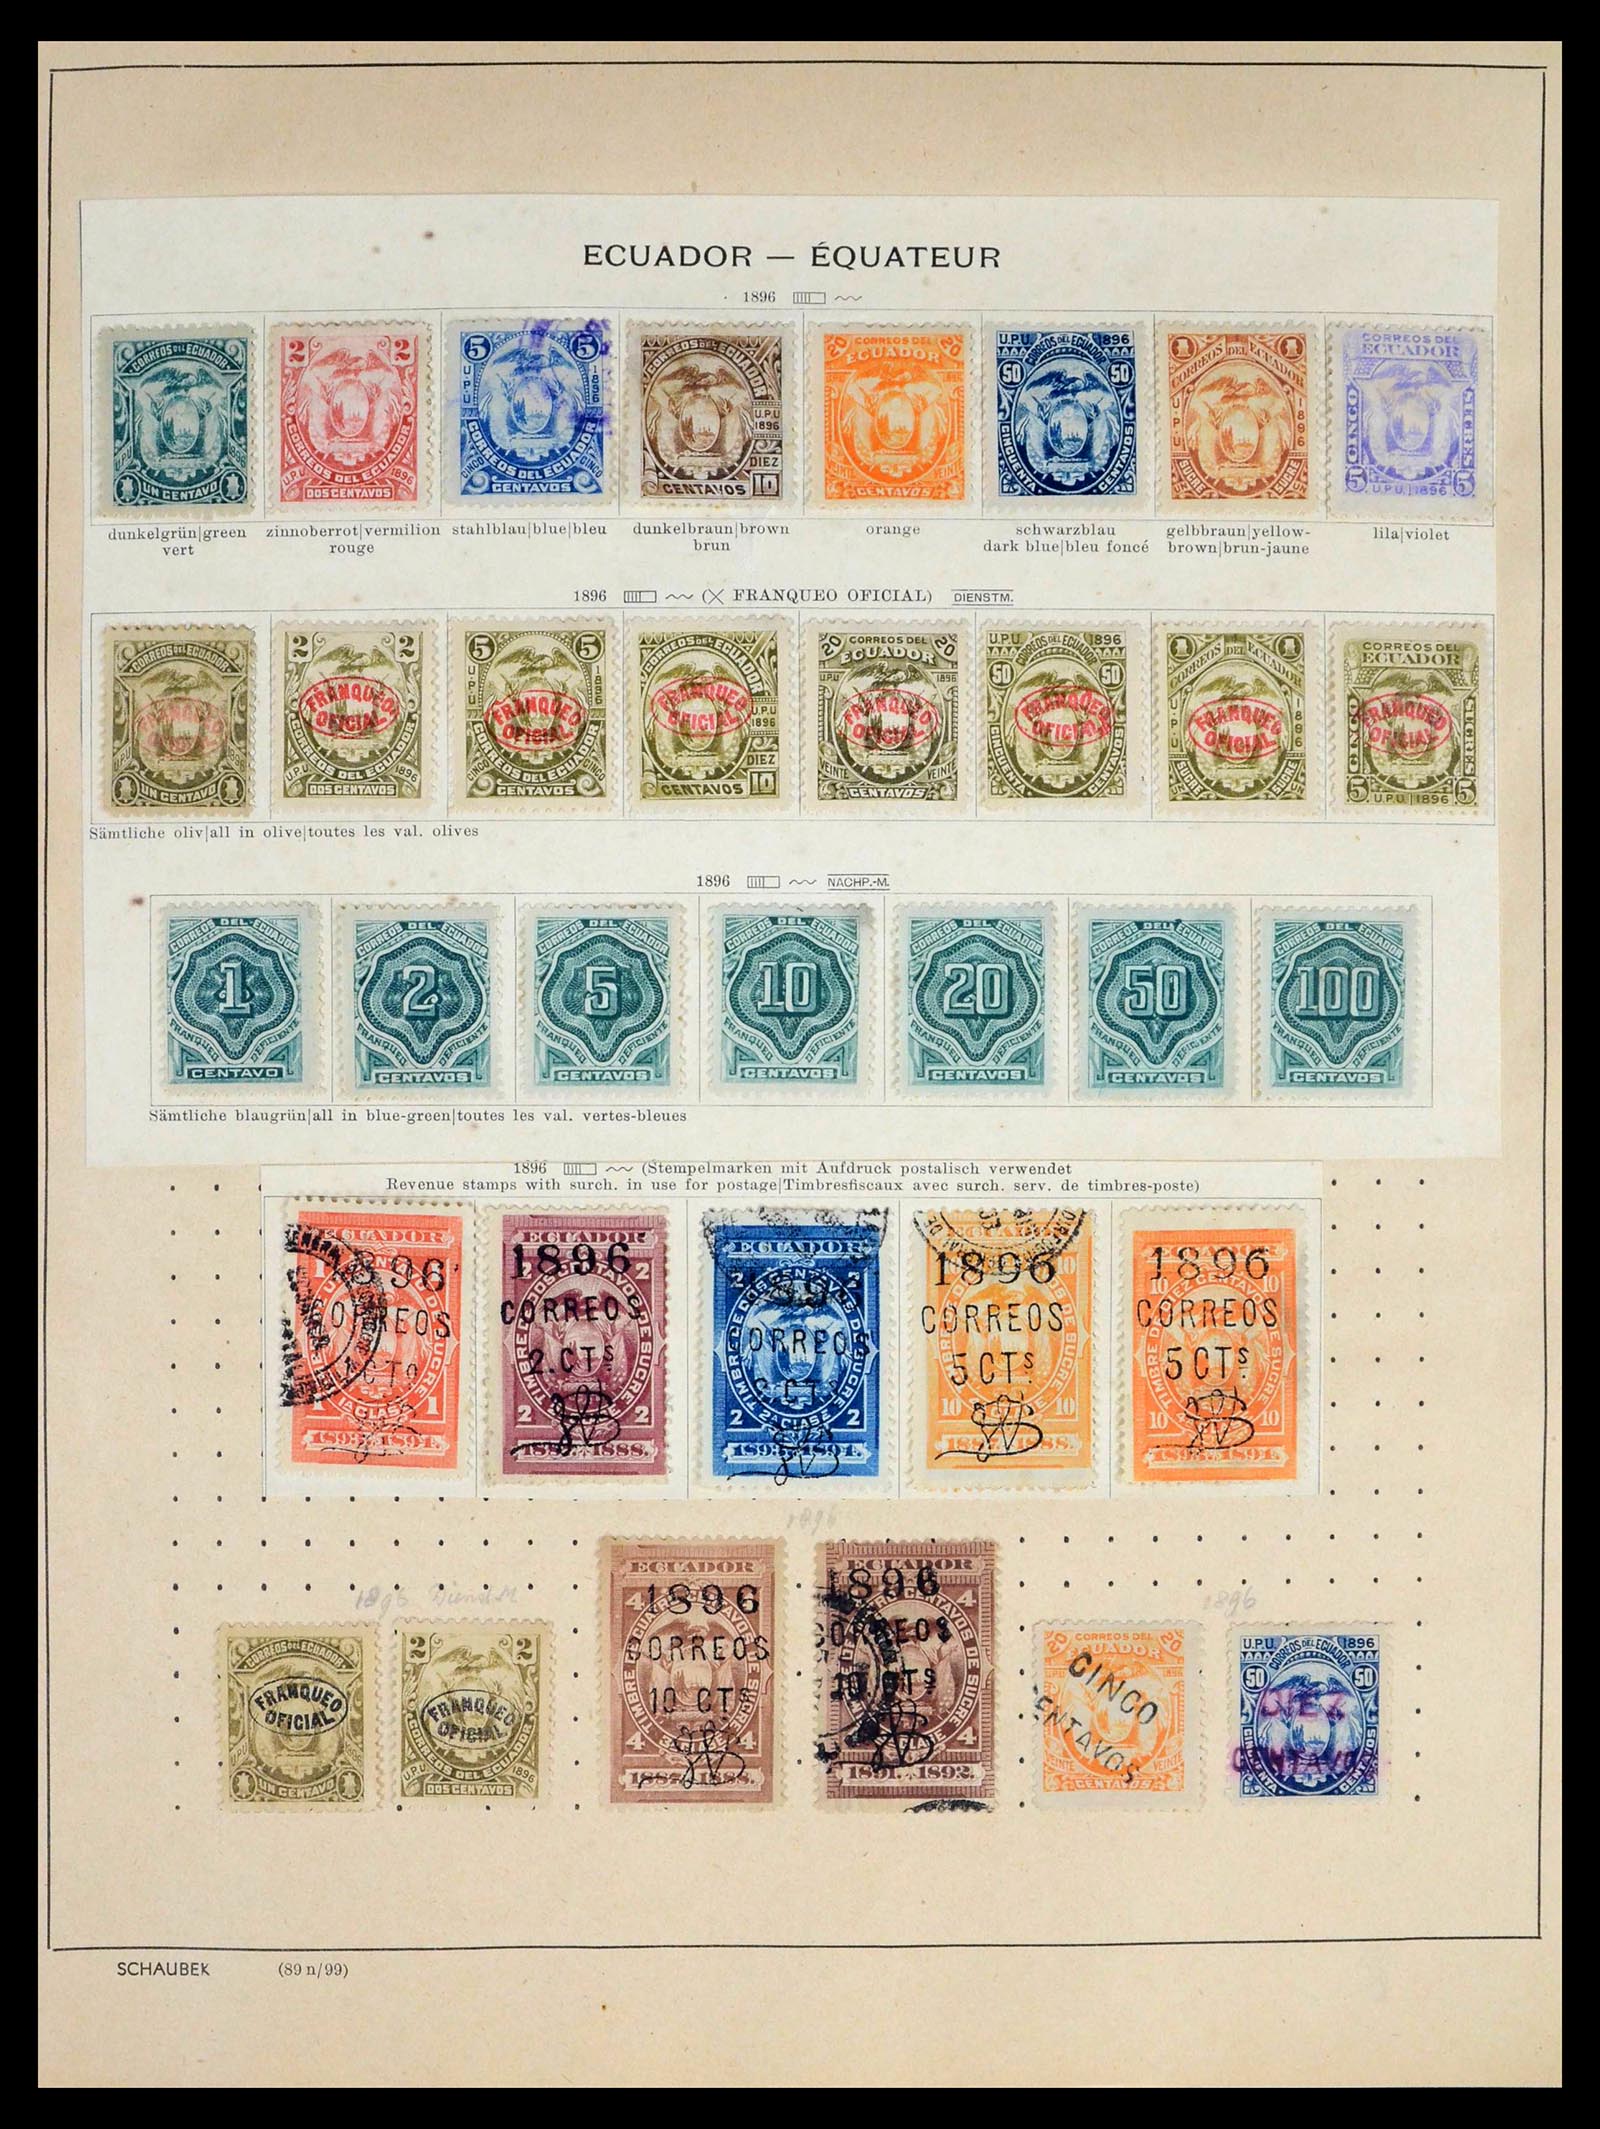 39456 0031 - Stamp collection 39456 Ecuador 1865-1960.